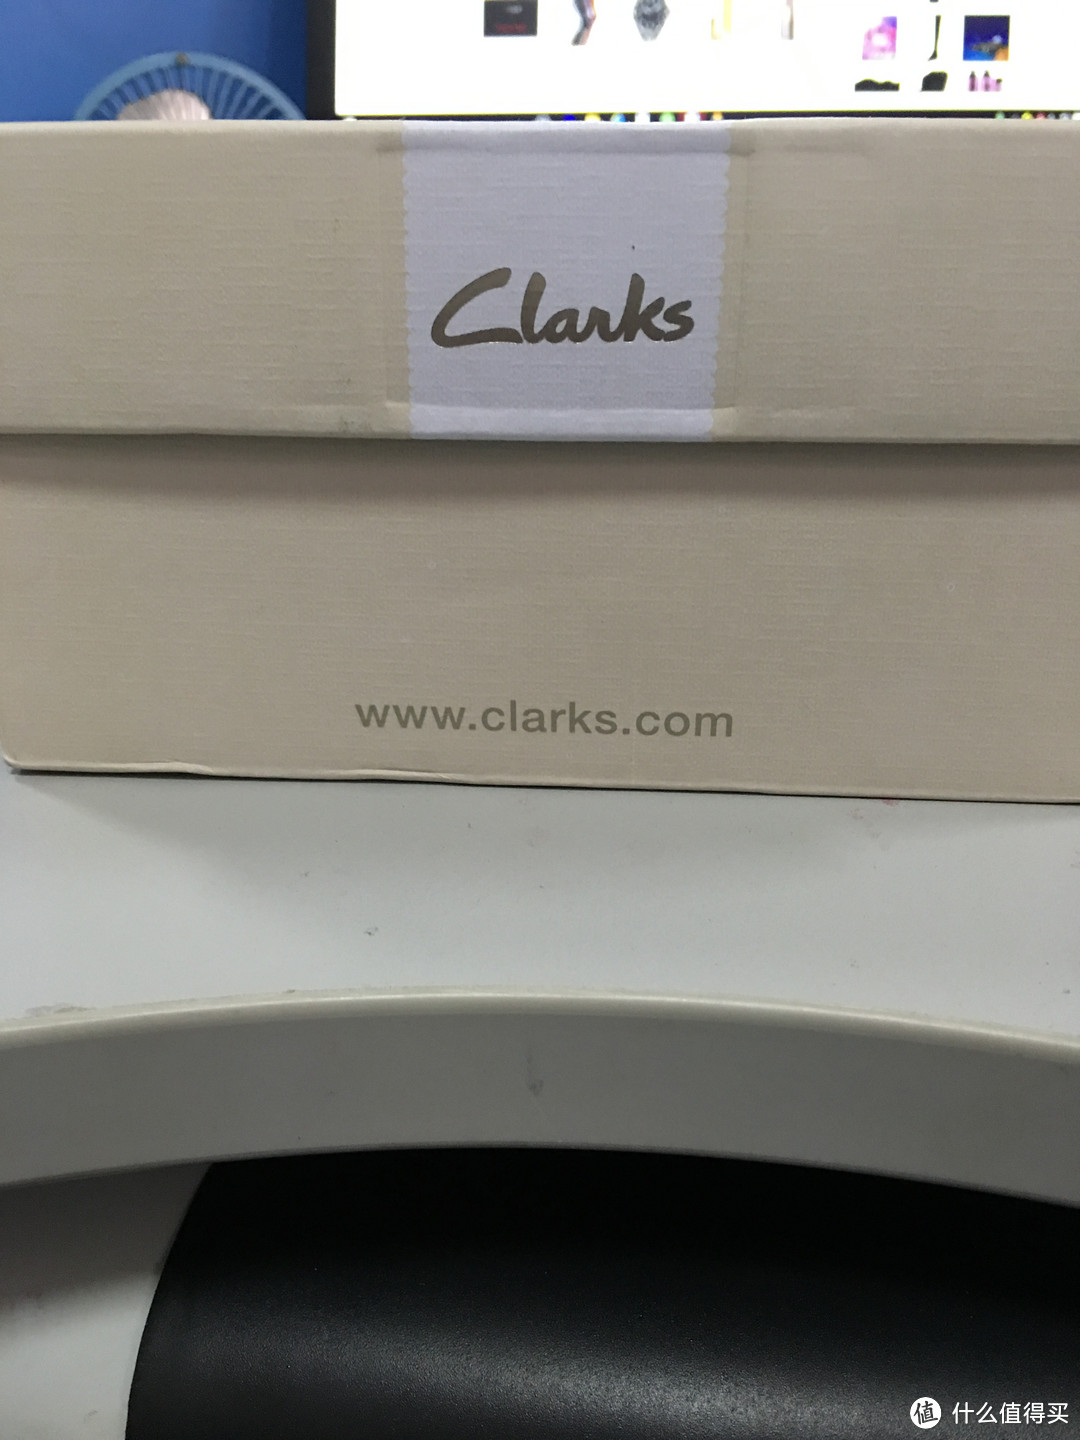 来自德亚的第一双 Clarks 高跟鞋